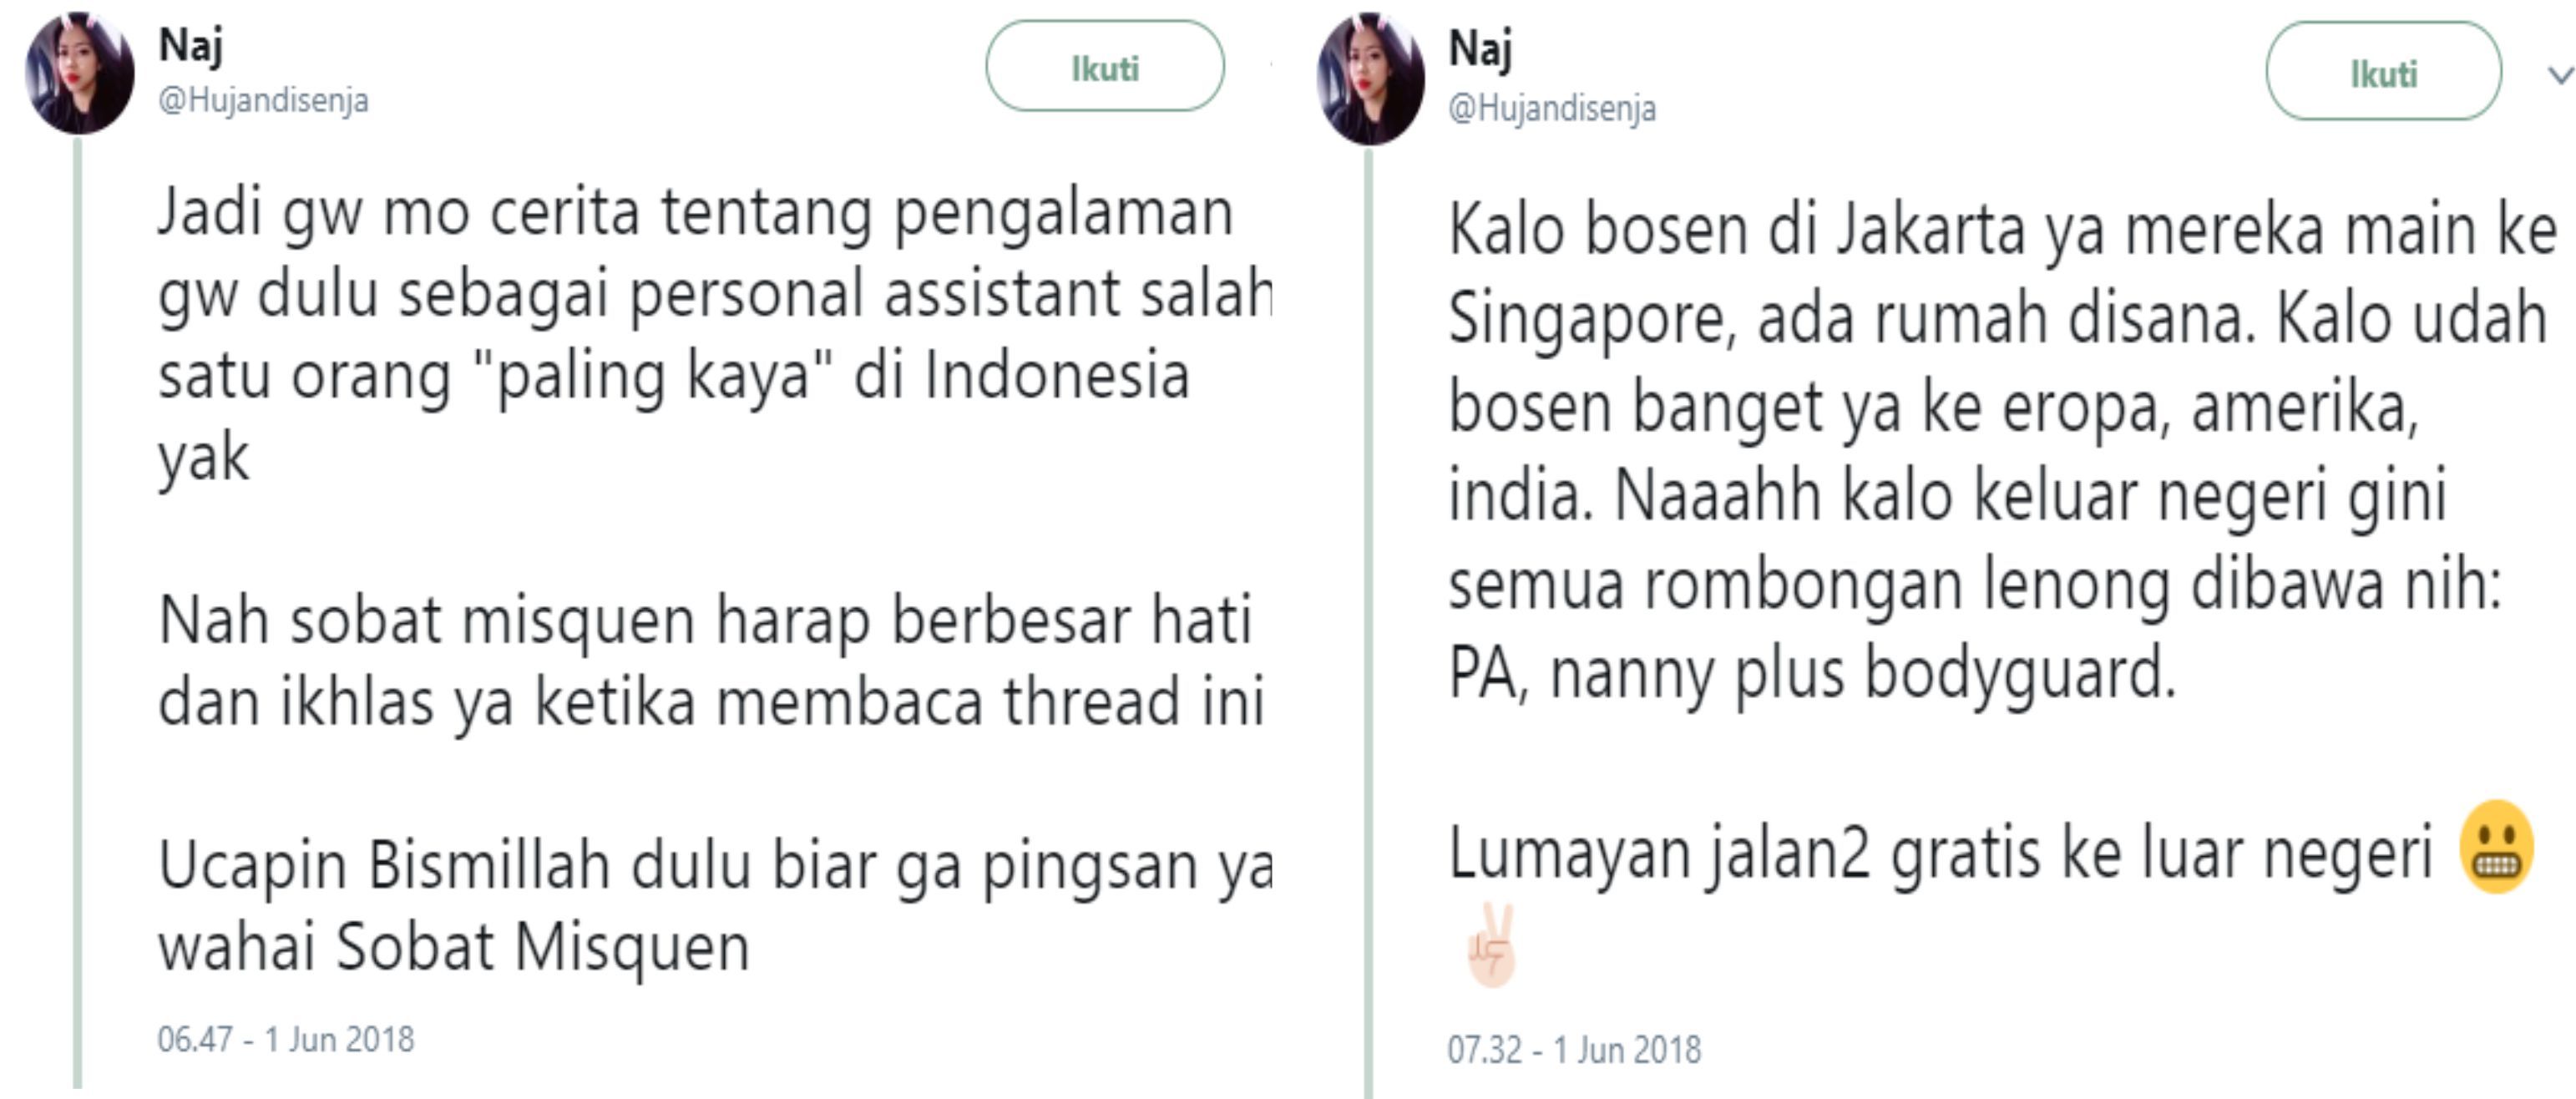 Cerita Asisten Pribadi Konglomerat TOP Indonesia Uang Jajan Anak Bosnya 5 Juta Per Hari Semua Halaman Nakita ID